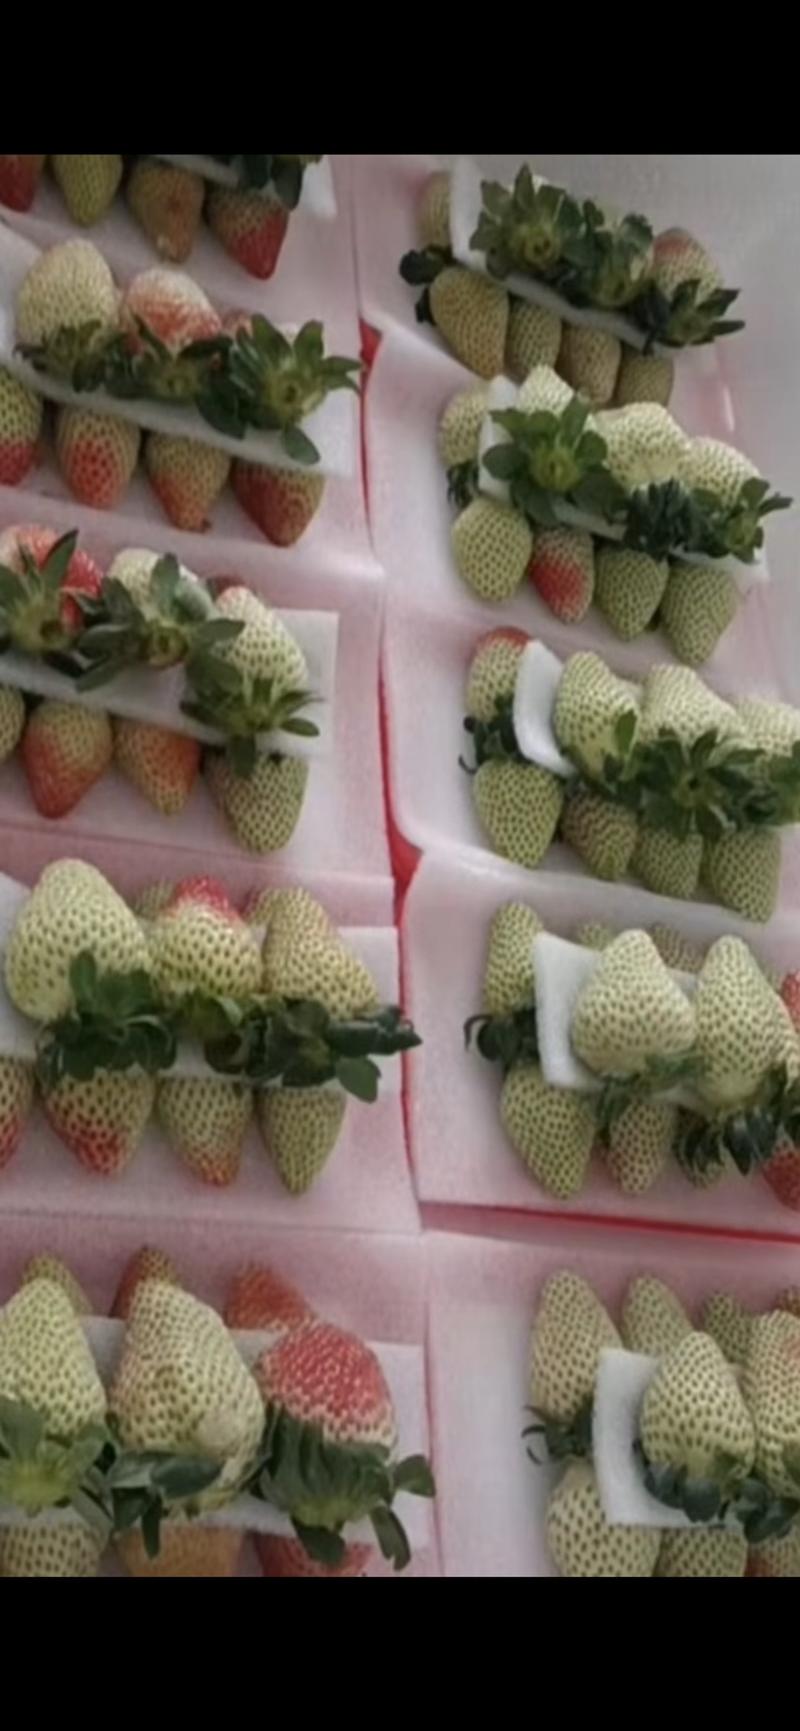 四季草莓加工草莓专烘焙蛋糕店奶茶店糖葫芦基地直销批发为主